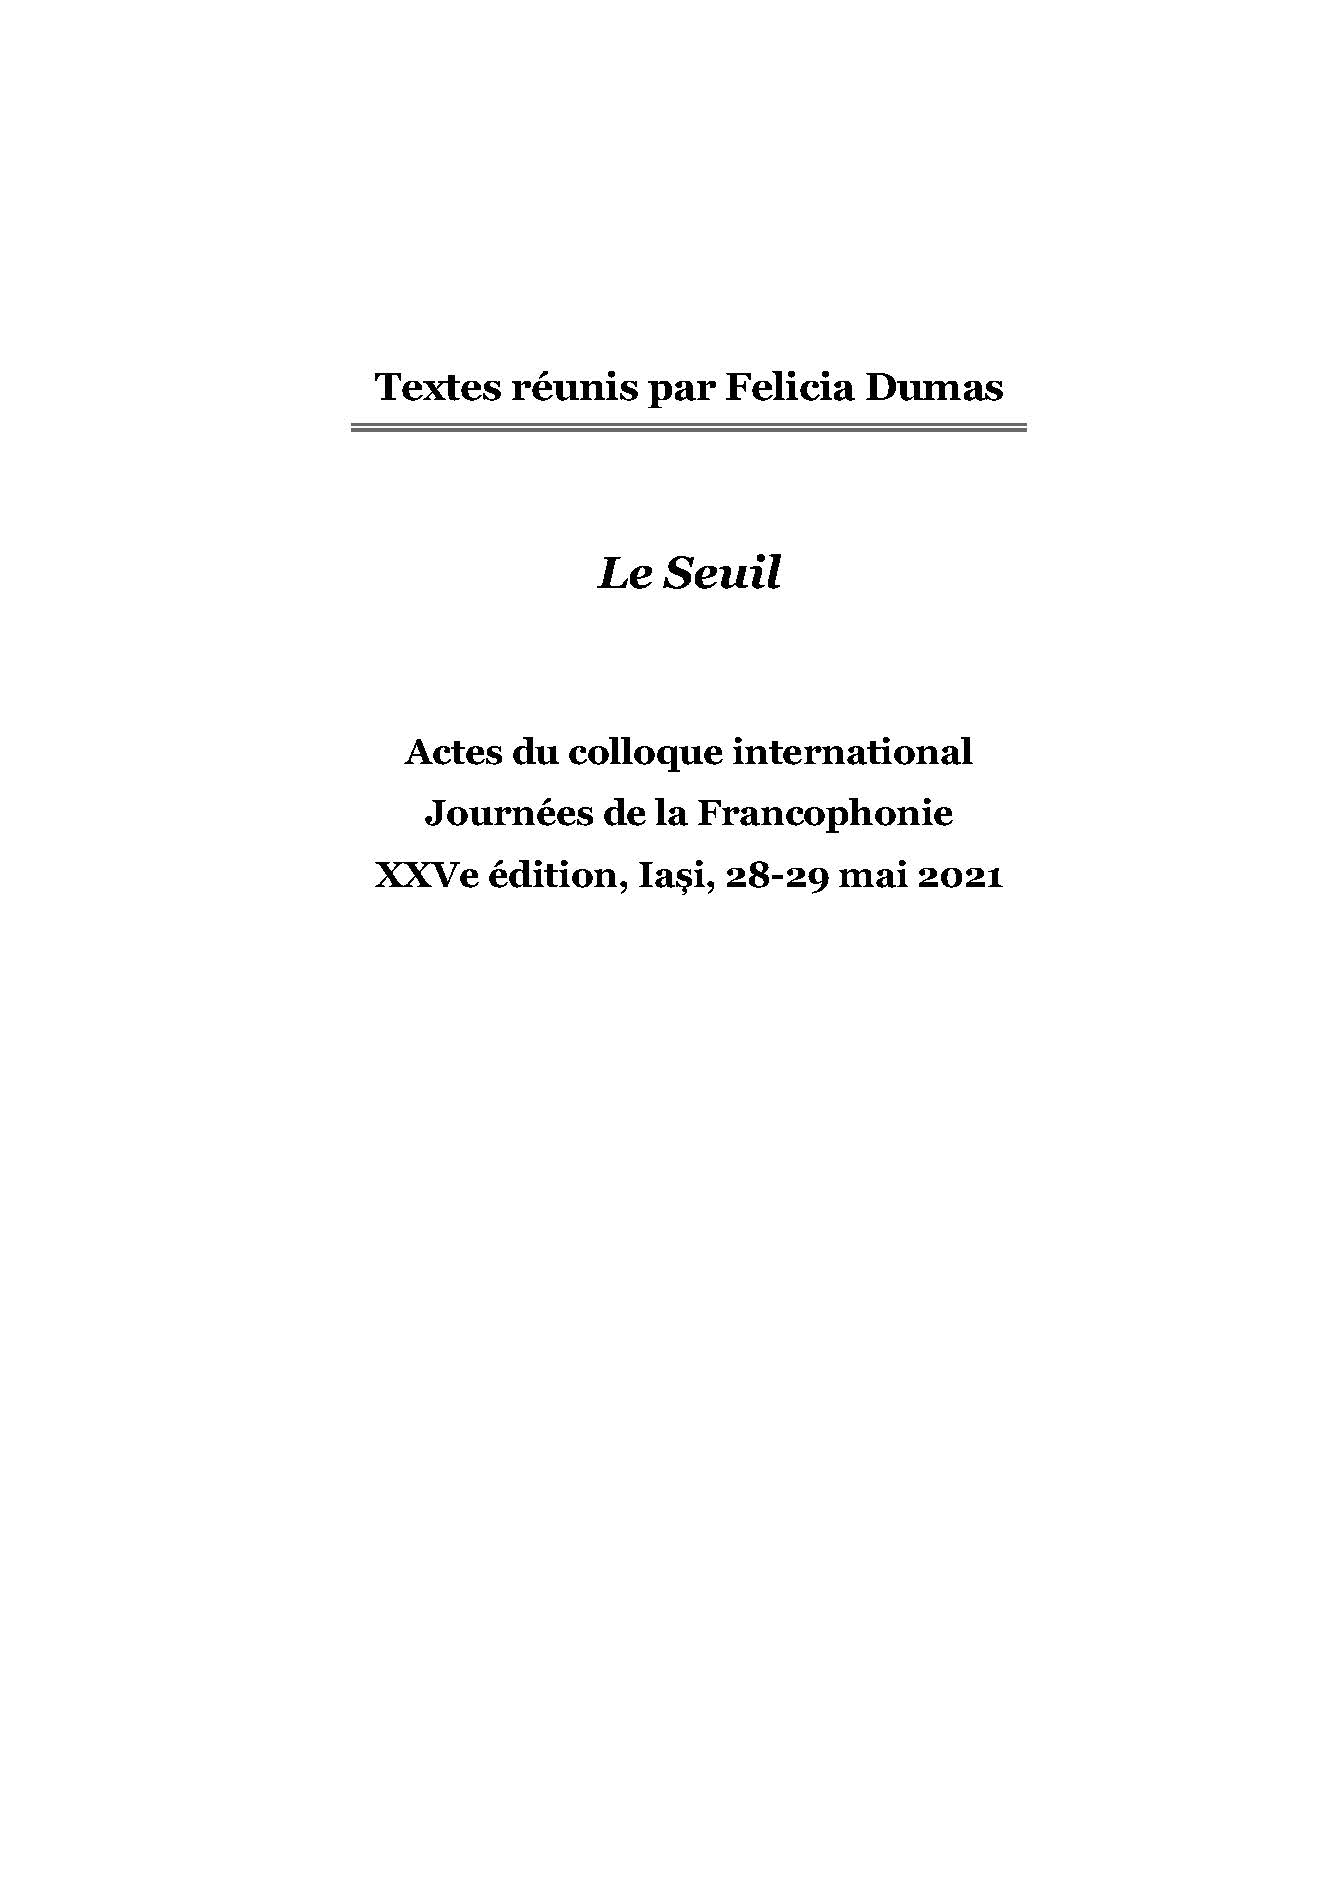 Le Seuil. Actes du colloque JOURNEES de la FRANCOPHONIE